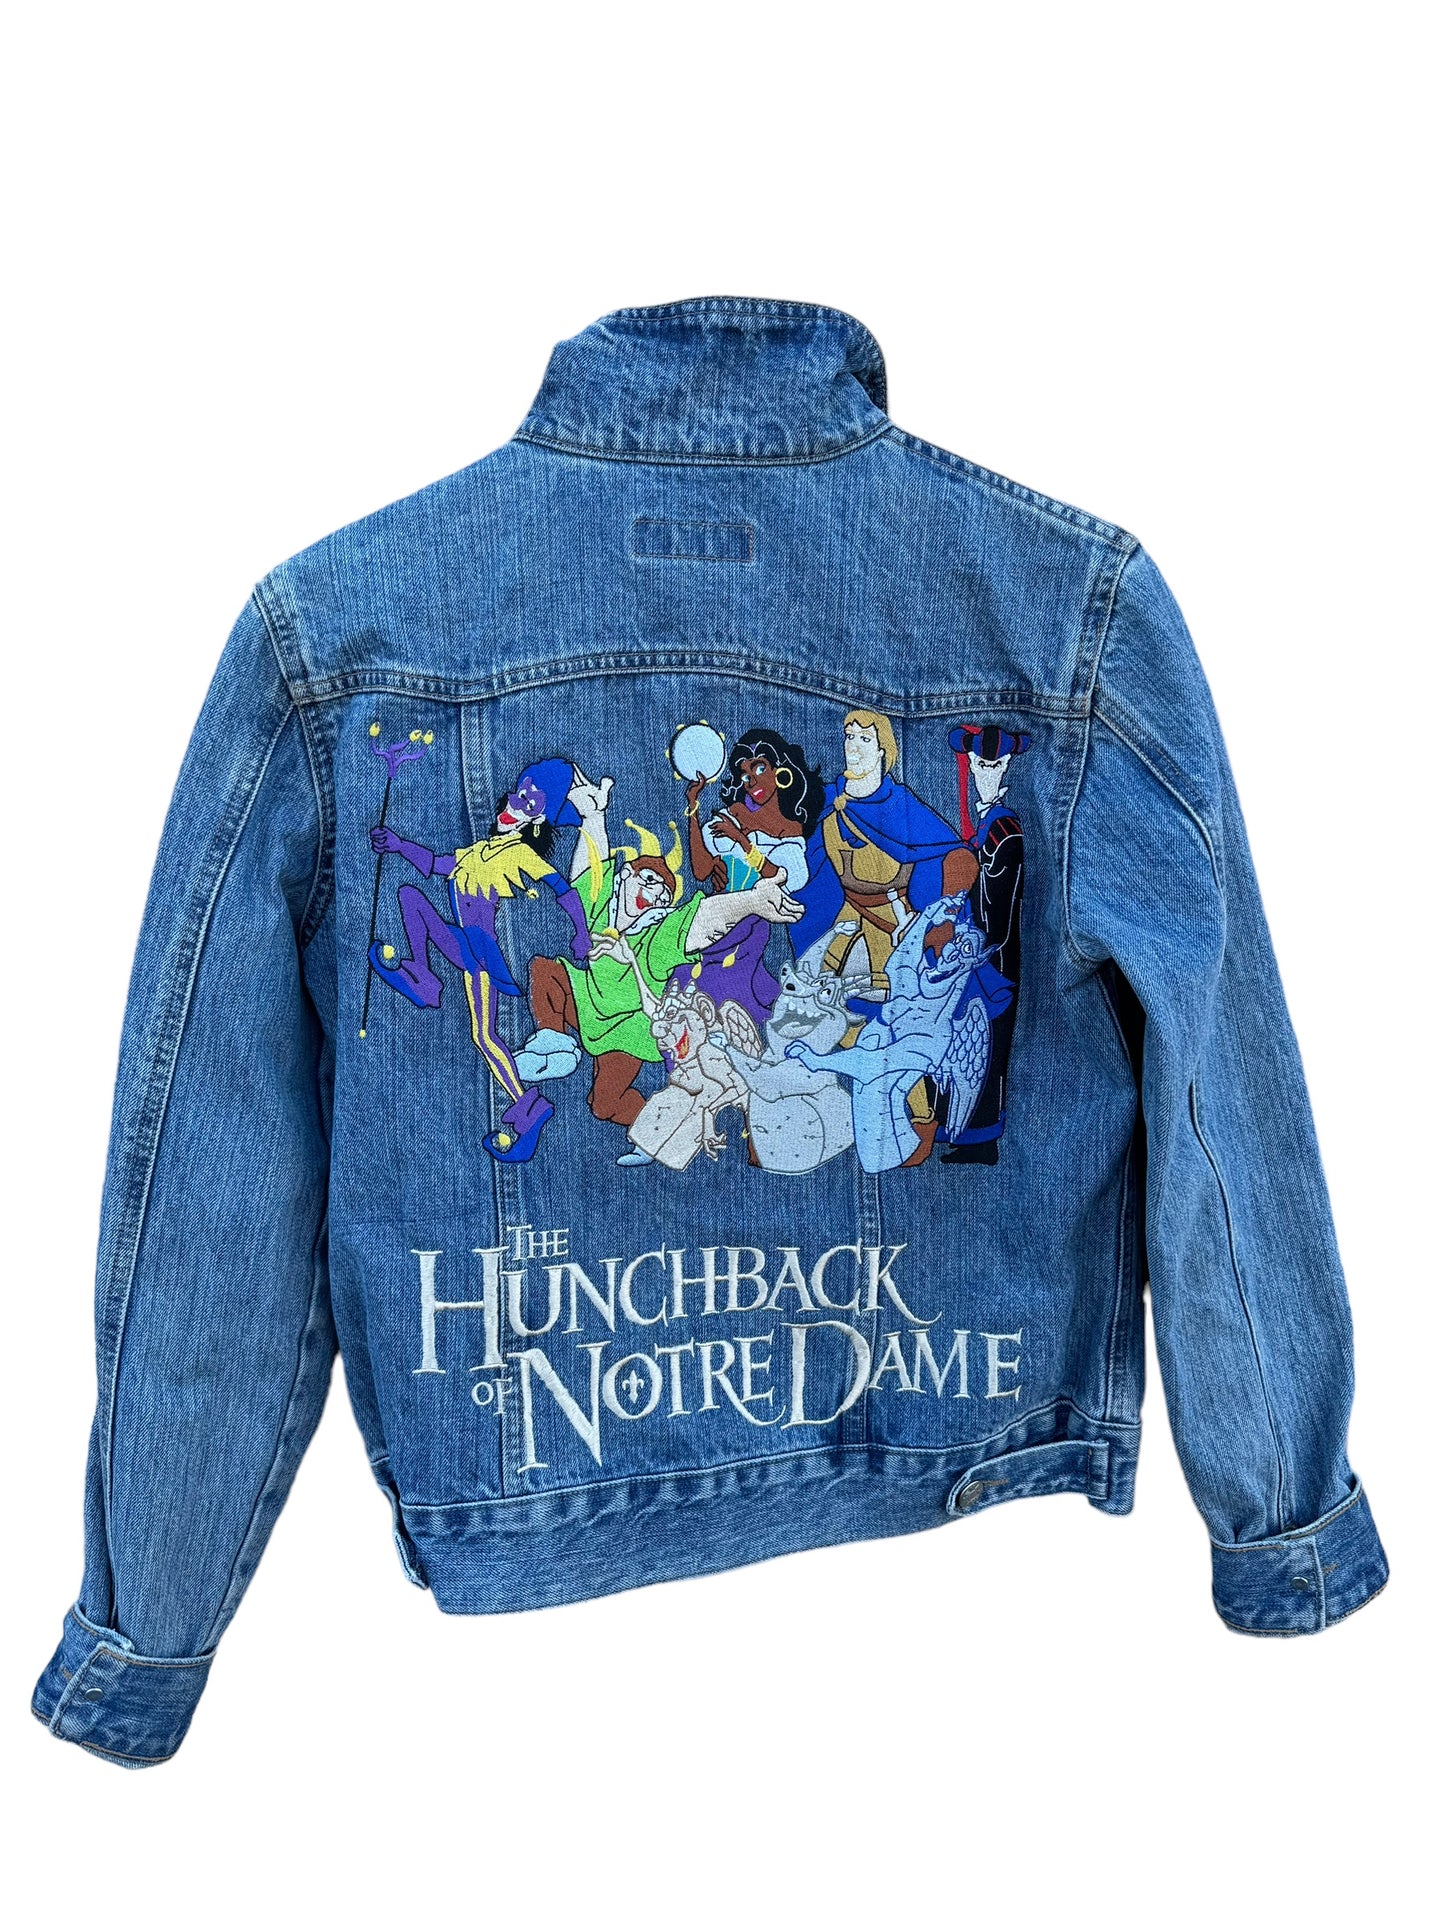 Hunchback of Notre Dame Denim Jacket